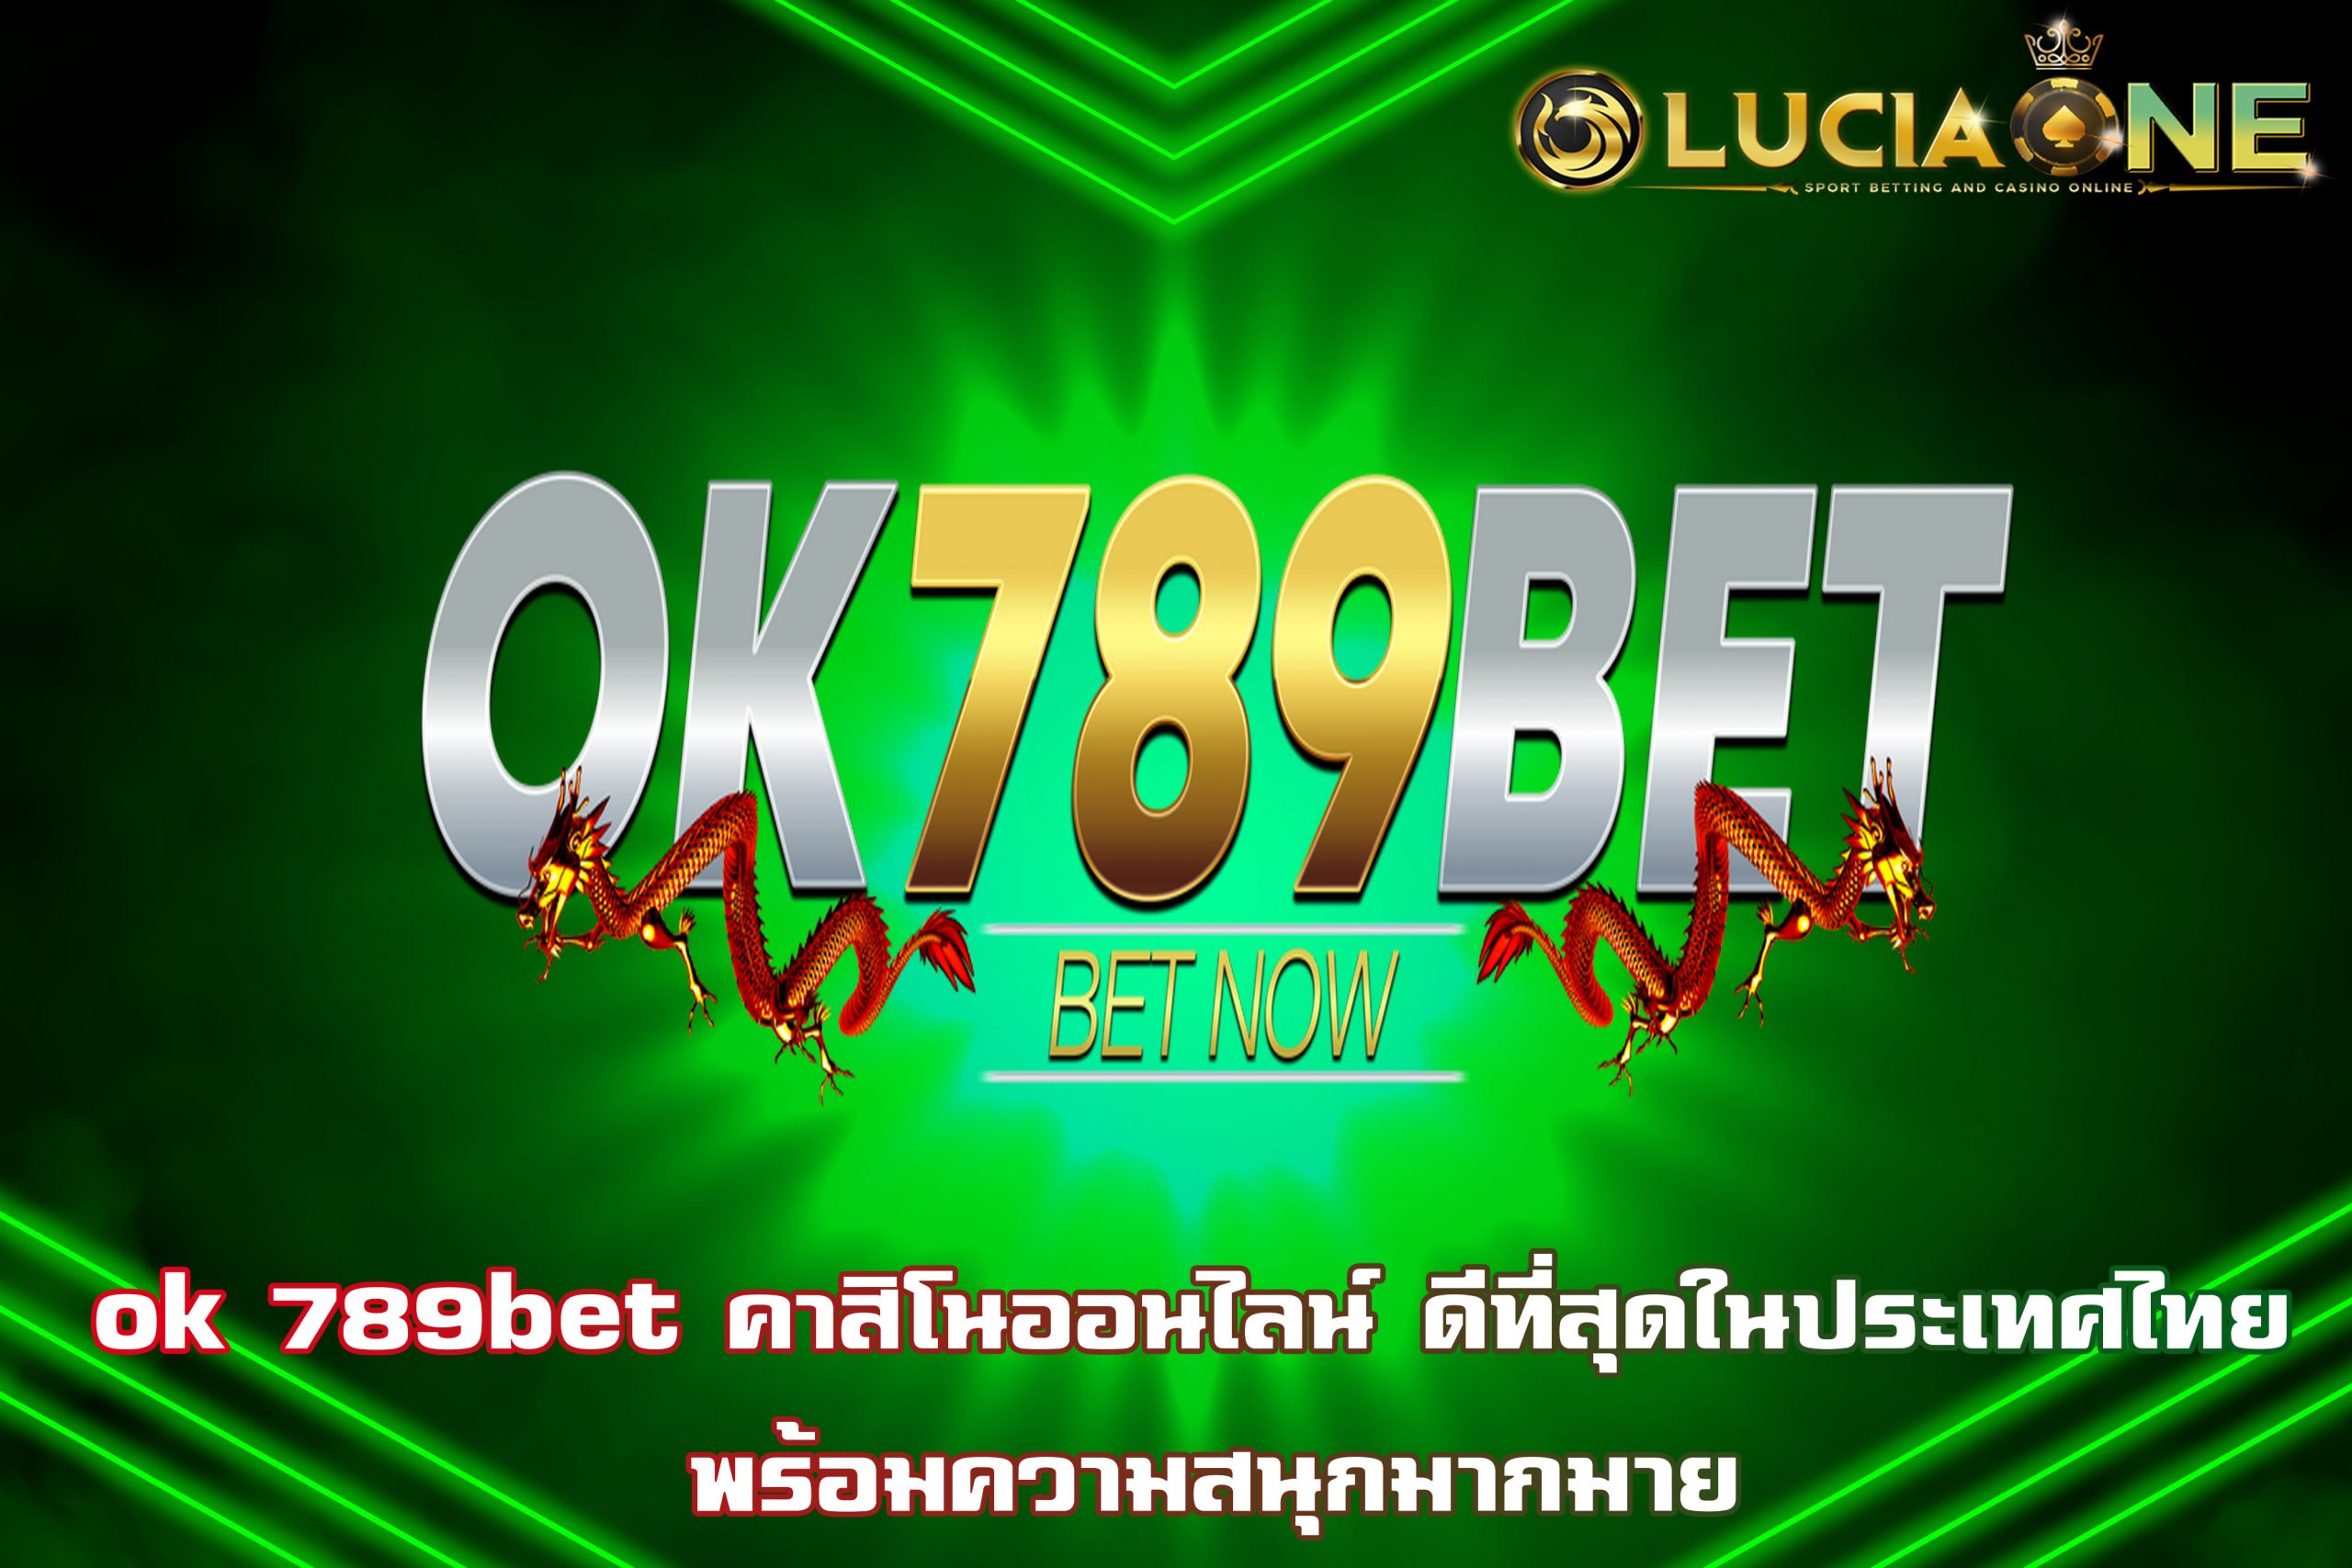 ok 789bet คาสิโนออนไลน์ ดีที่สุดในประเทศไทย พร้อมความสนุกมากมาย